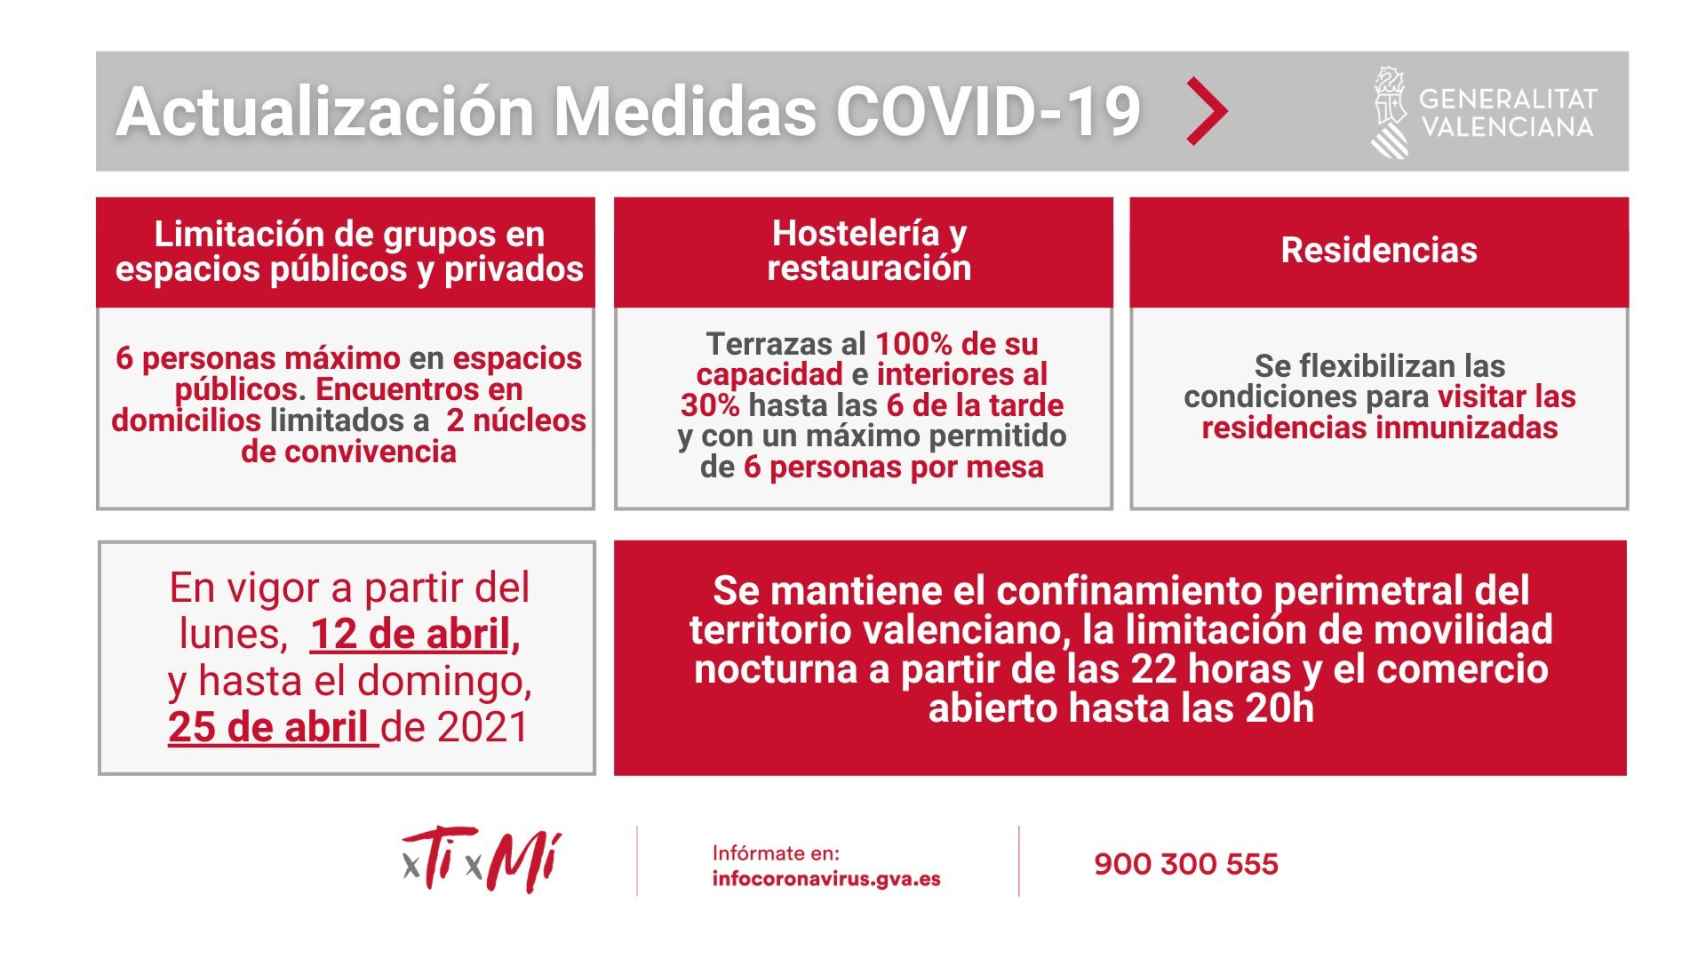 Actualización de las medidas para controlar la Covid-19 en la Comunidad Valenciana. EE